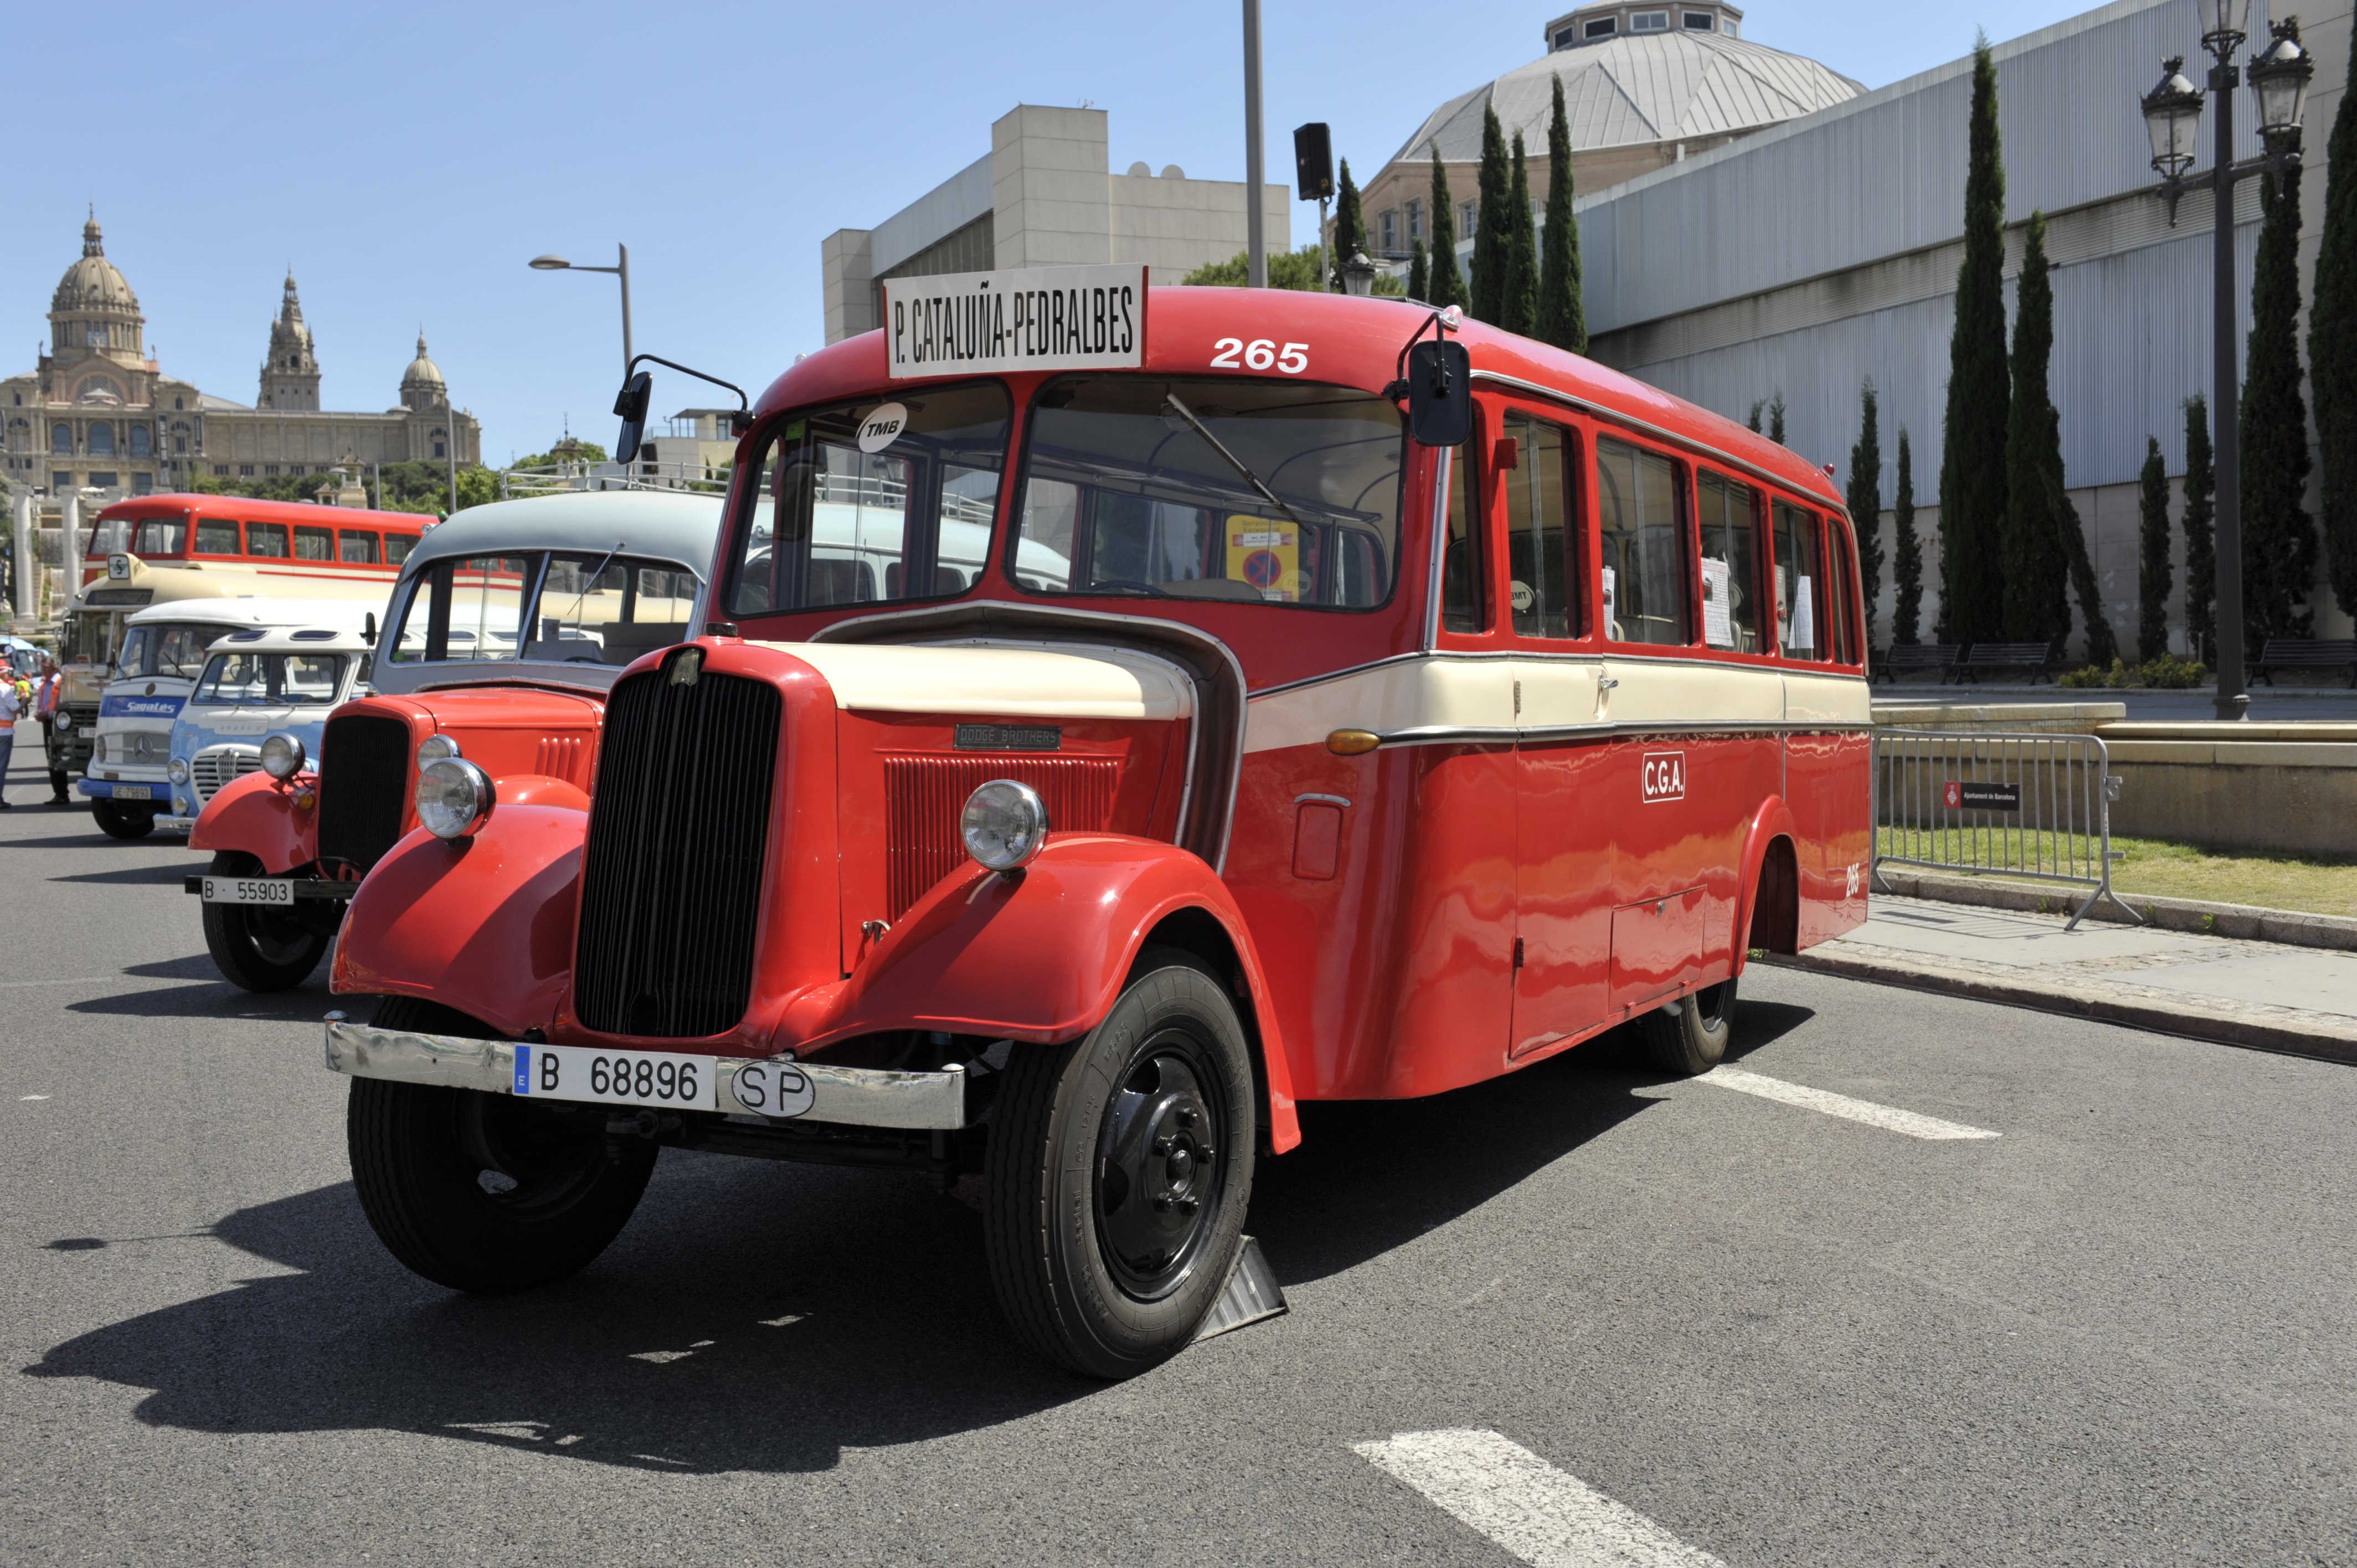 Cita per als amants del transport històric: exhibició d’autobusos clàssics a Montjuïc